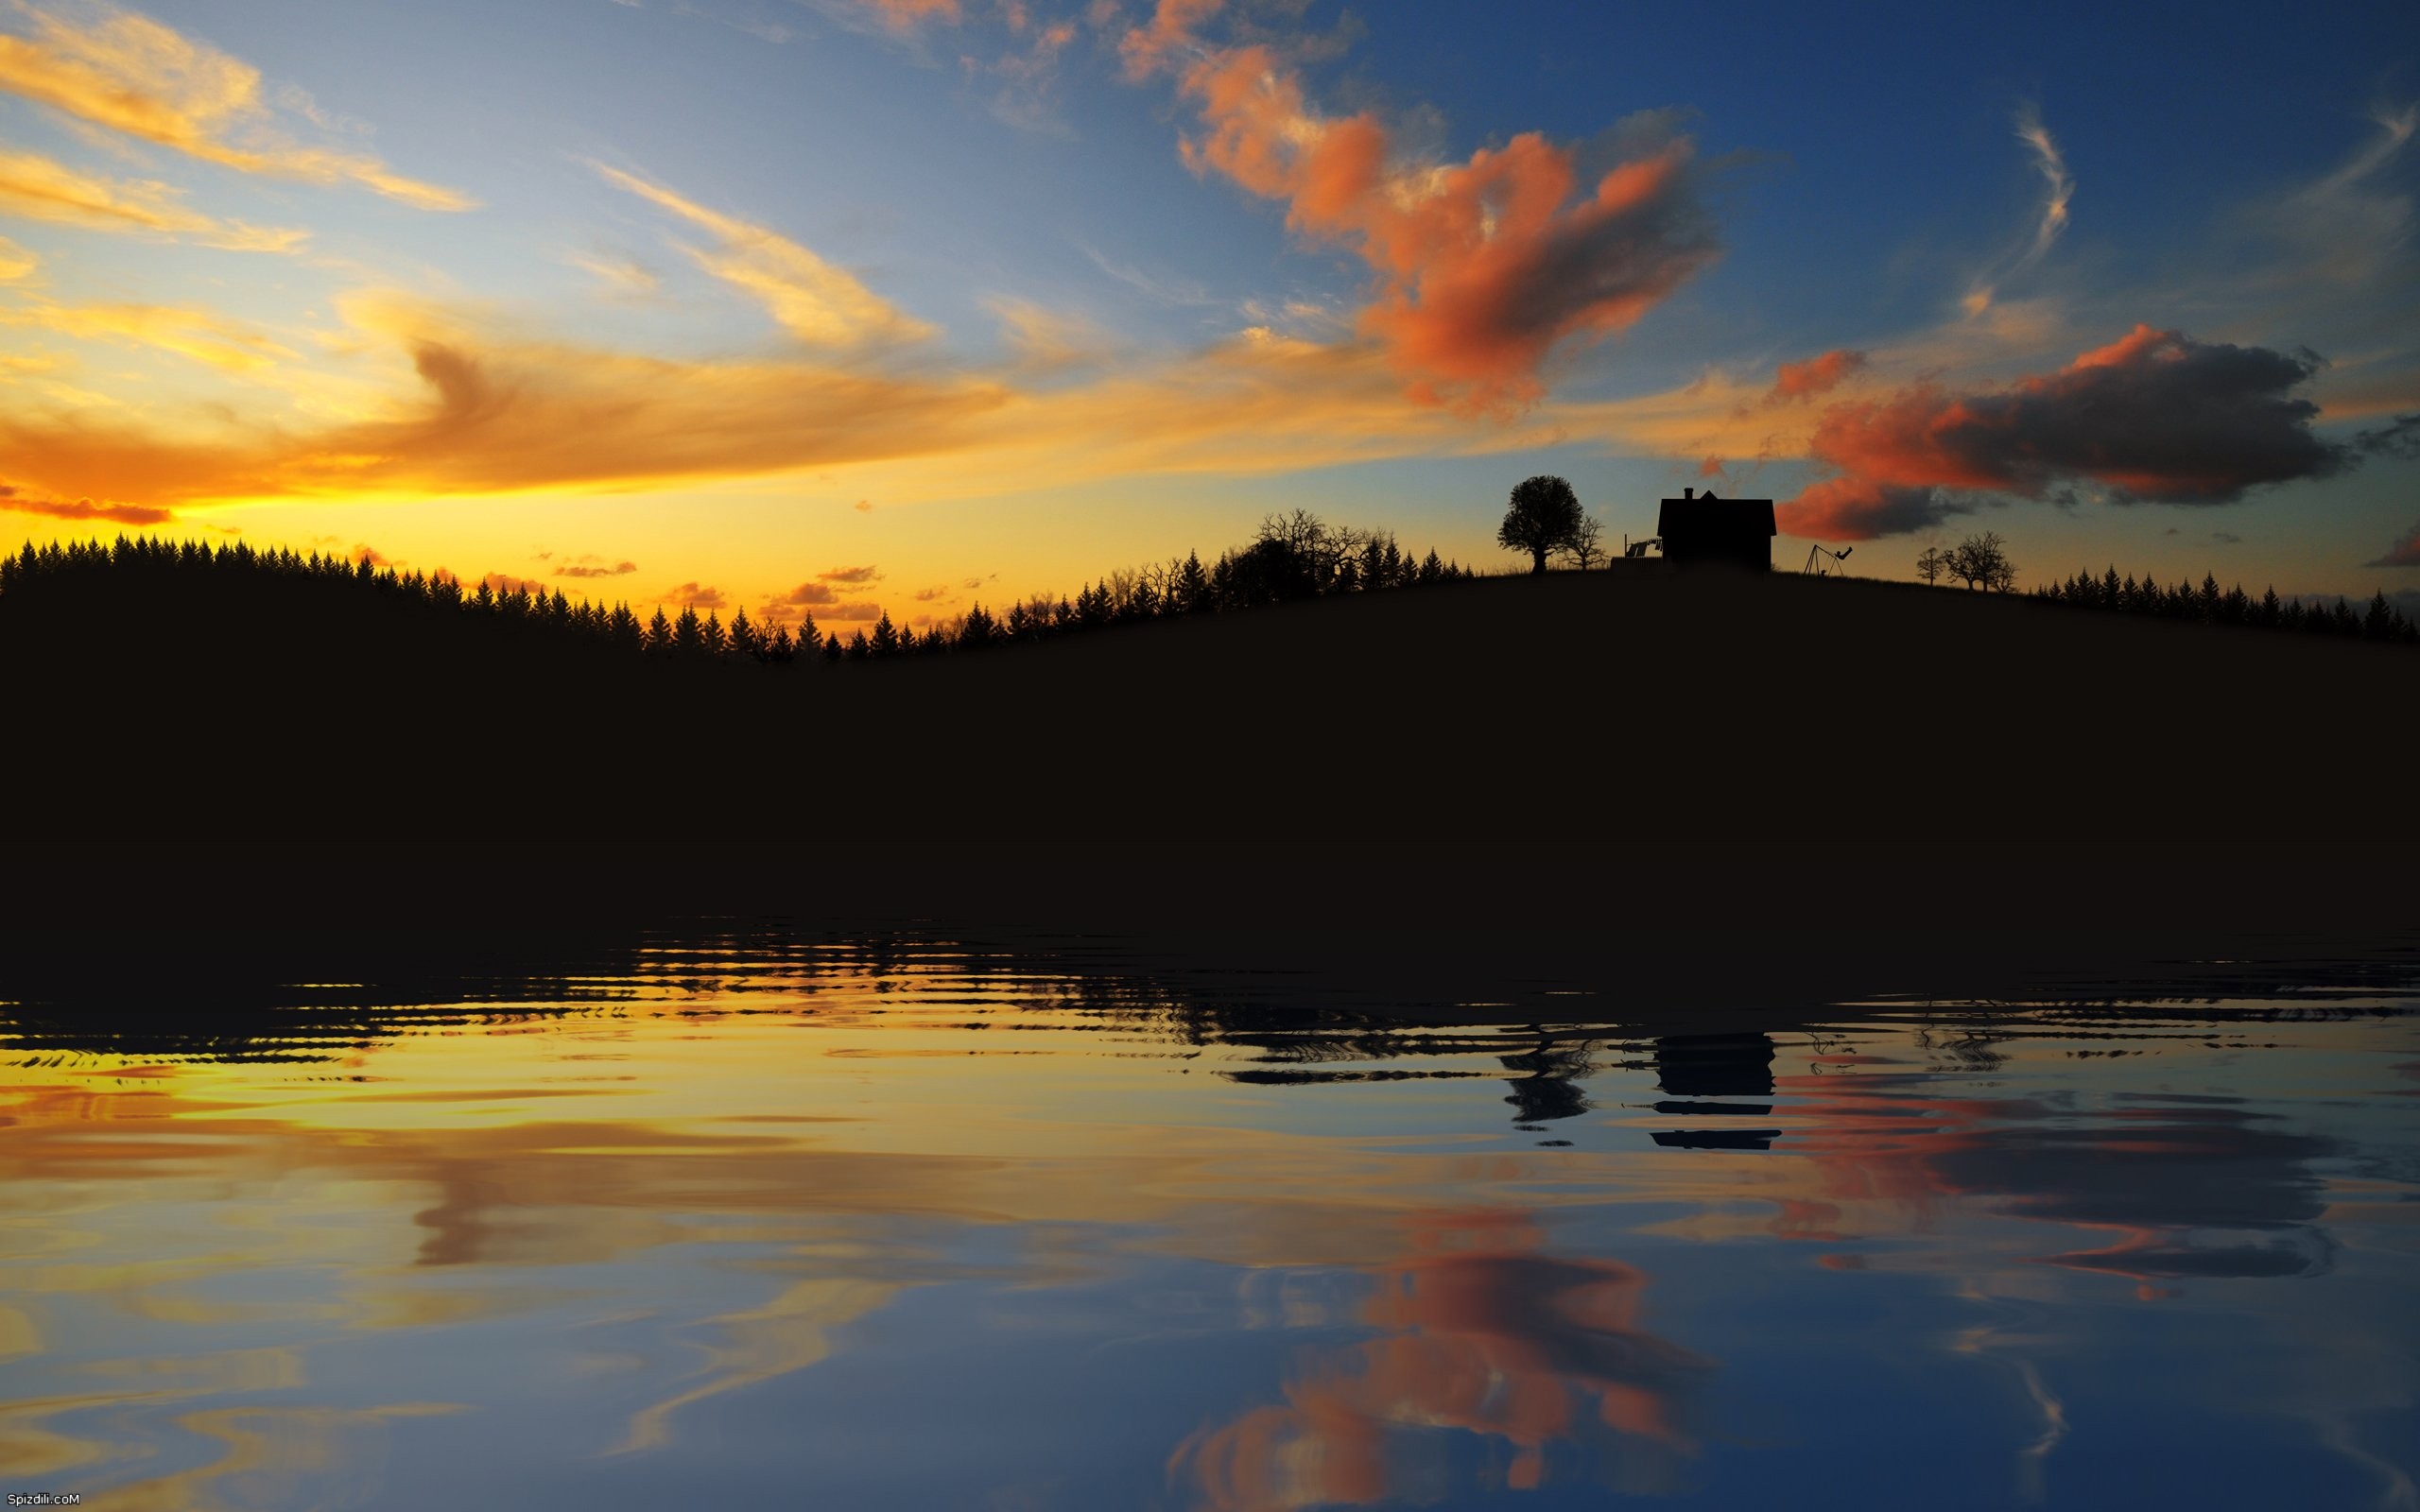 sunset, landscapes, nature - desktop wallpaper